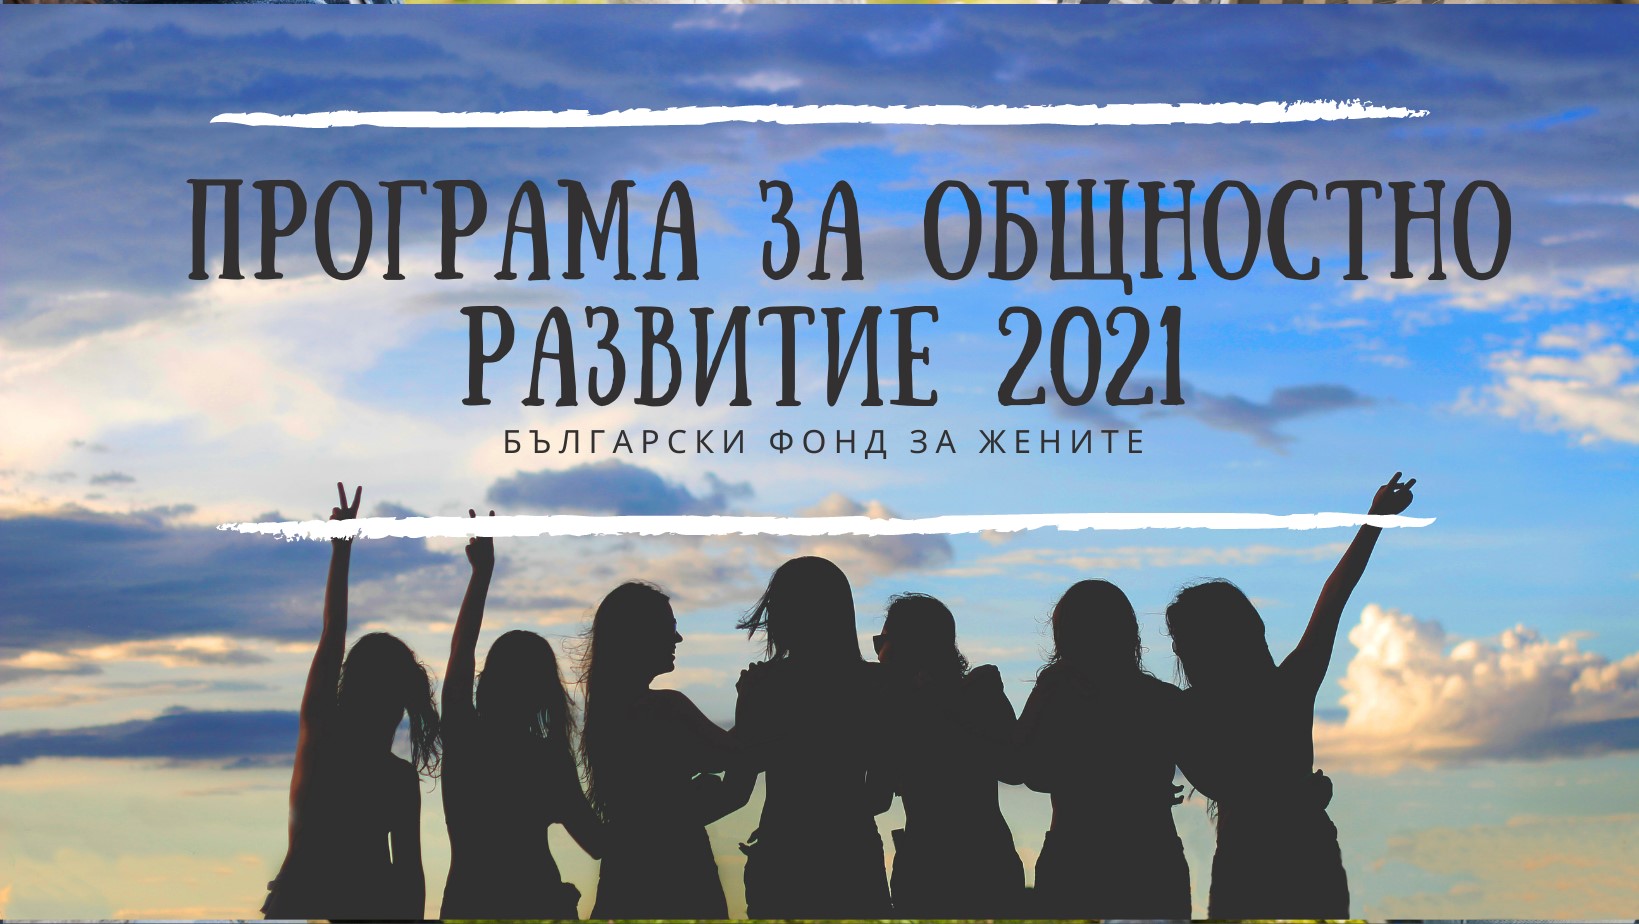 Български фонд за жените получи 101 кандидатури от 43 населени места по Програмата за общностно развитие 2021